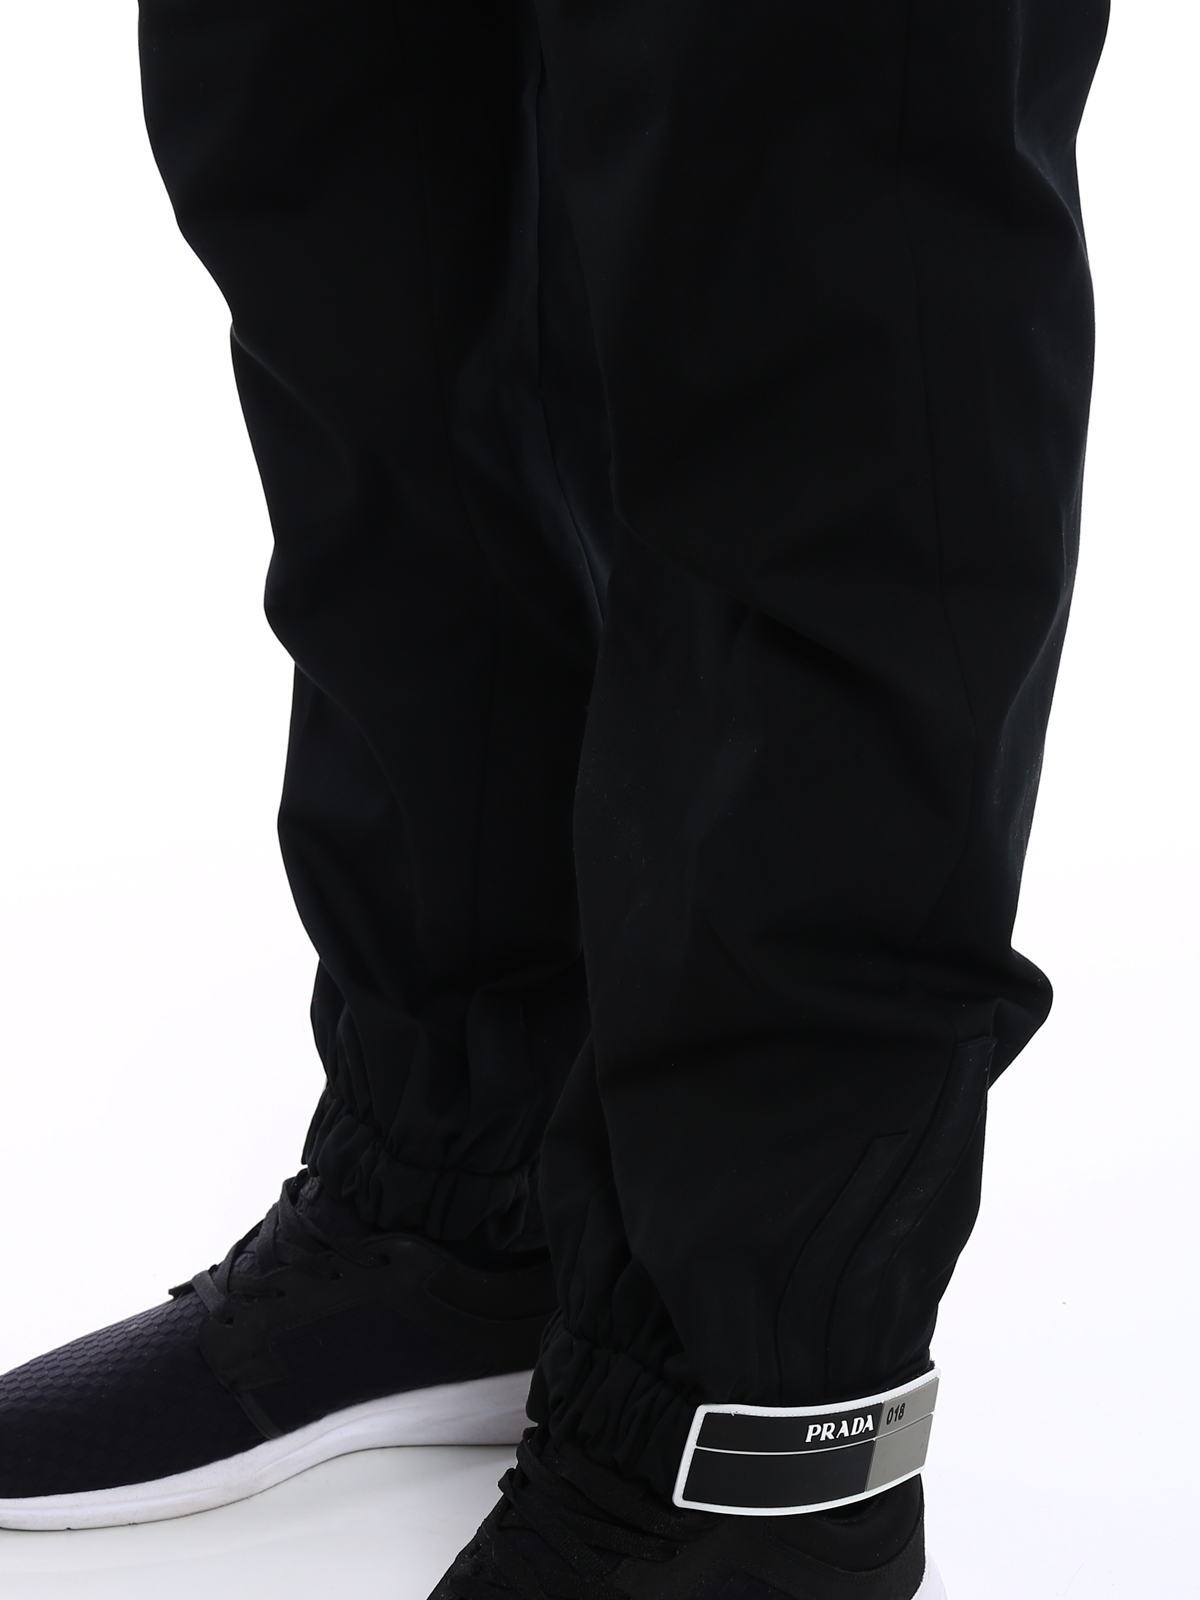 Voordracht Pelgrim Verdampen Casual trousers Prada - Rubber logo straps cotton trousers - UP00071QQ3F0002